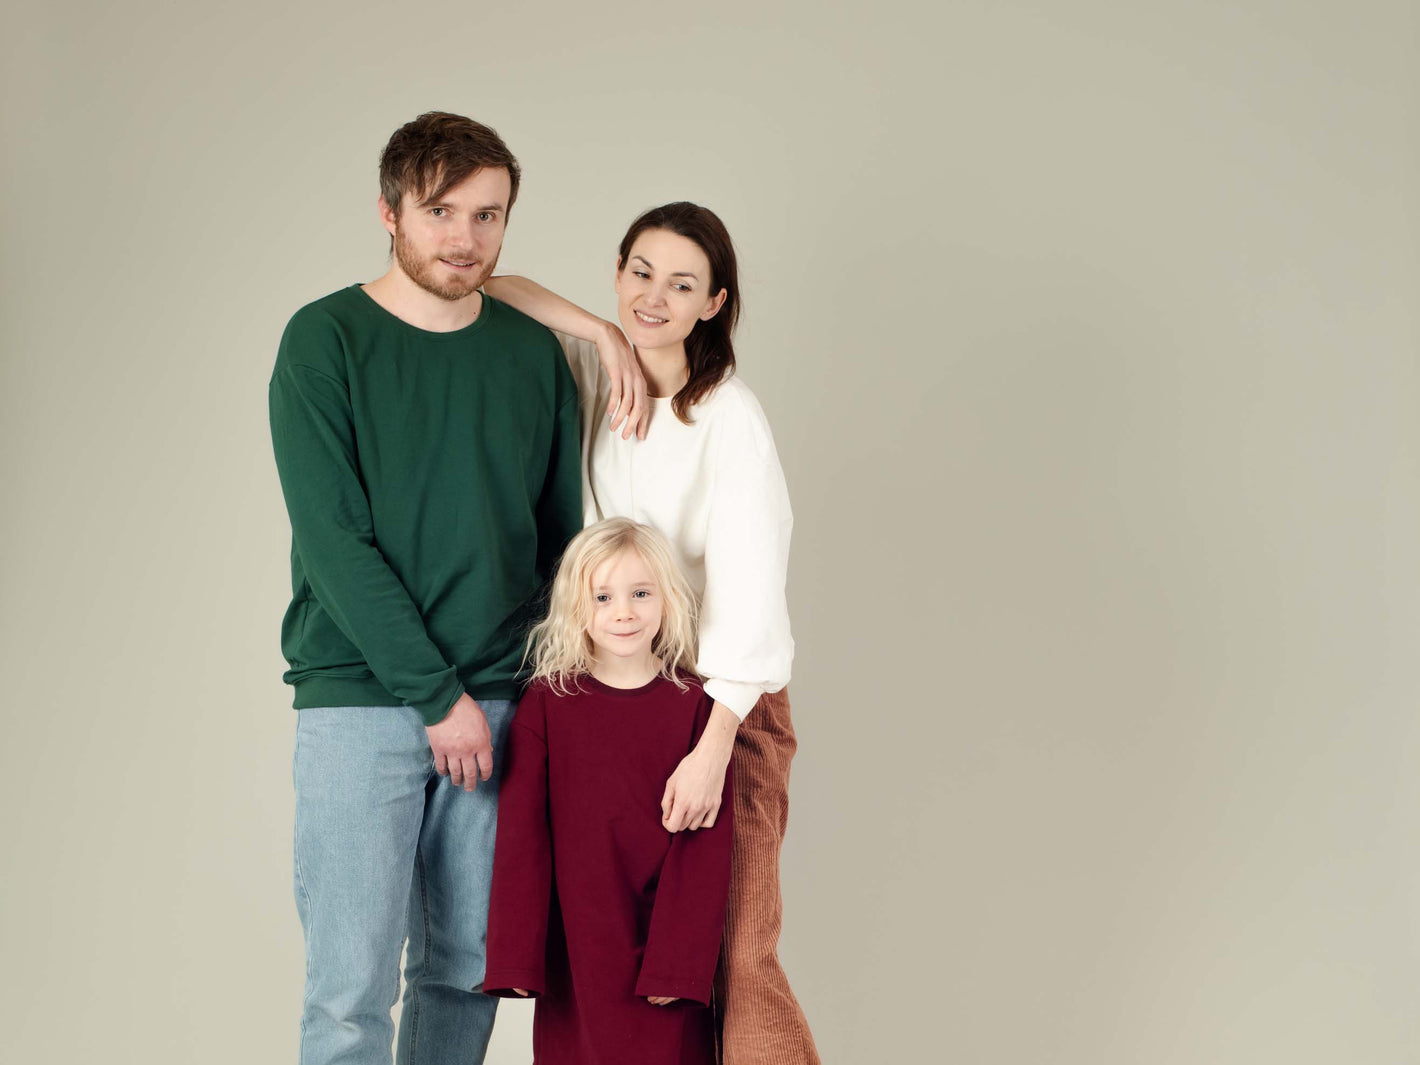 Familie in Pullis in Weihnachtsfarben (Rot, Grün, Weiß) steht zusammen und sieht in die Kamera